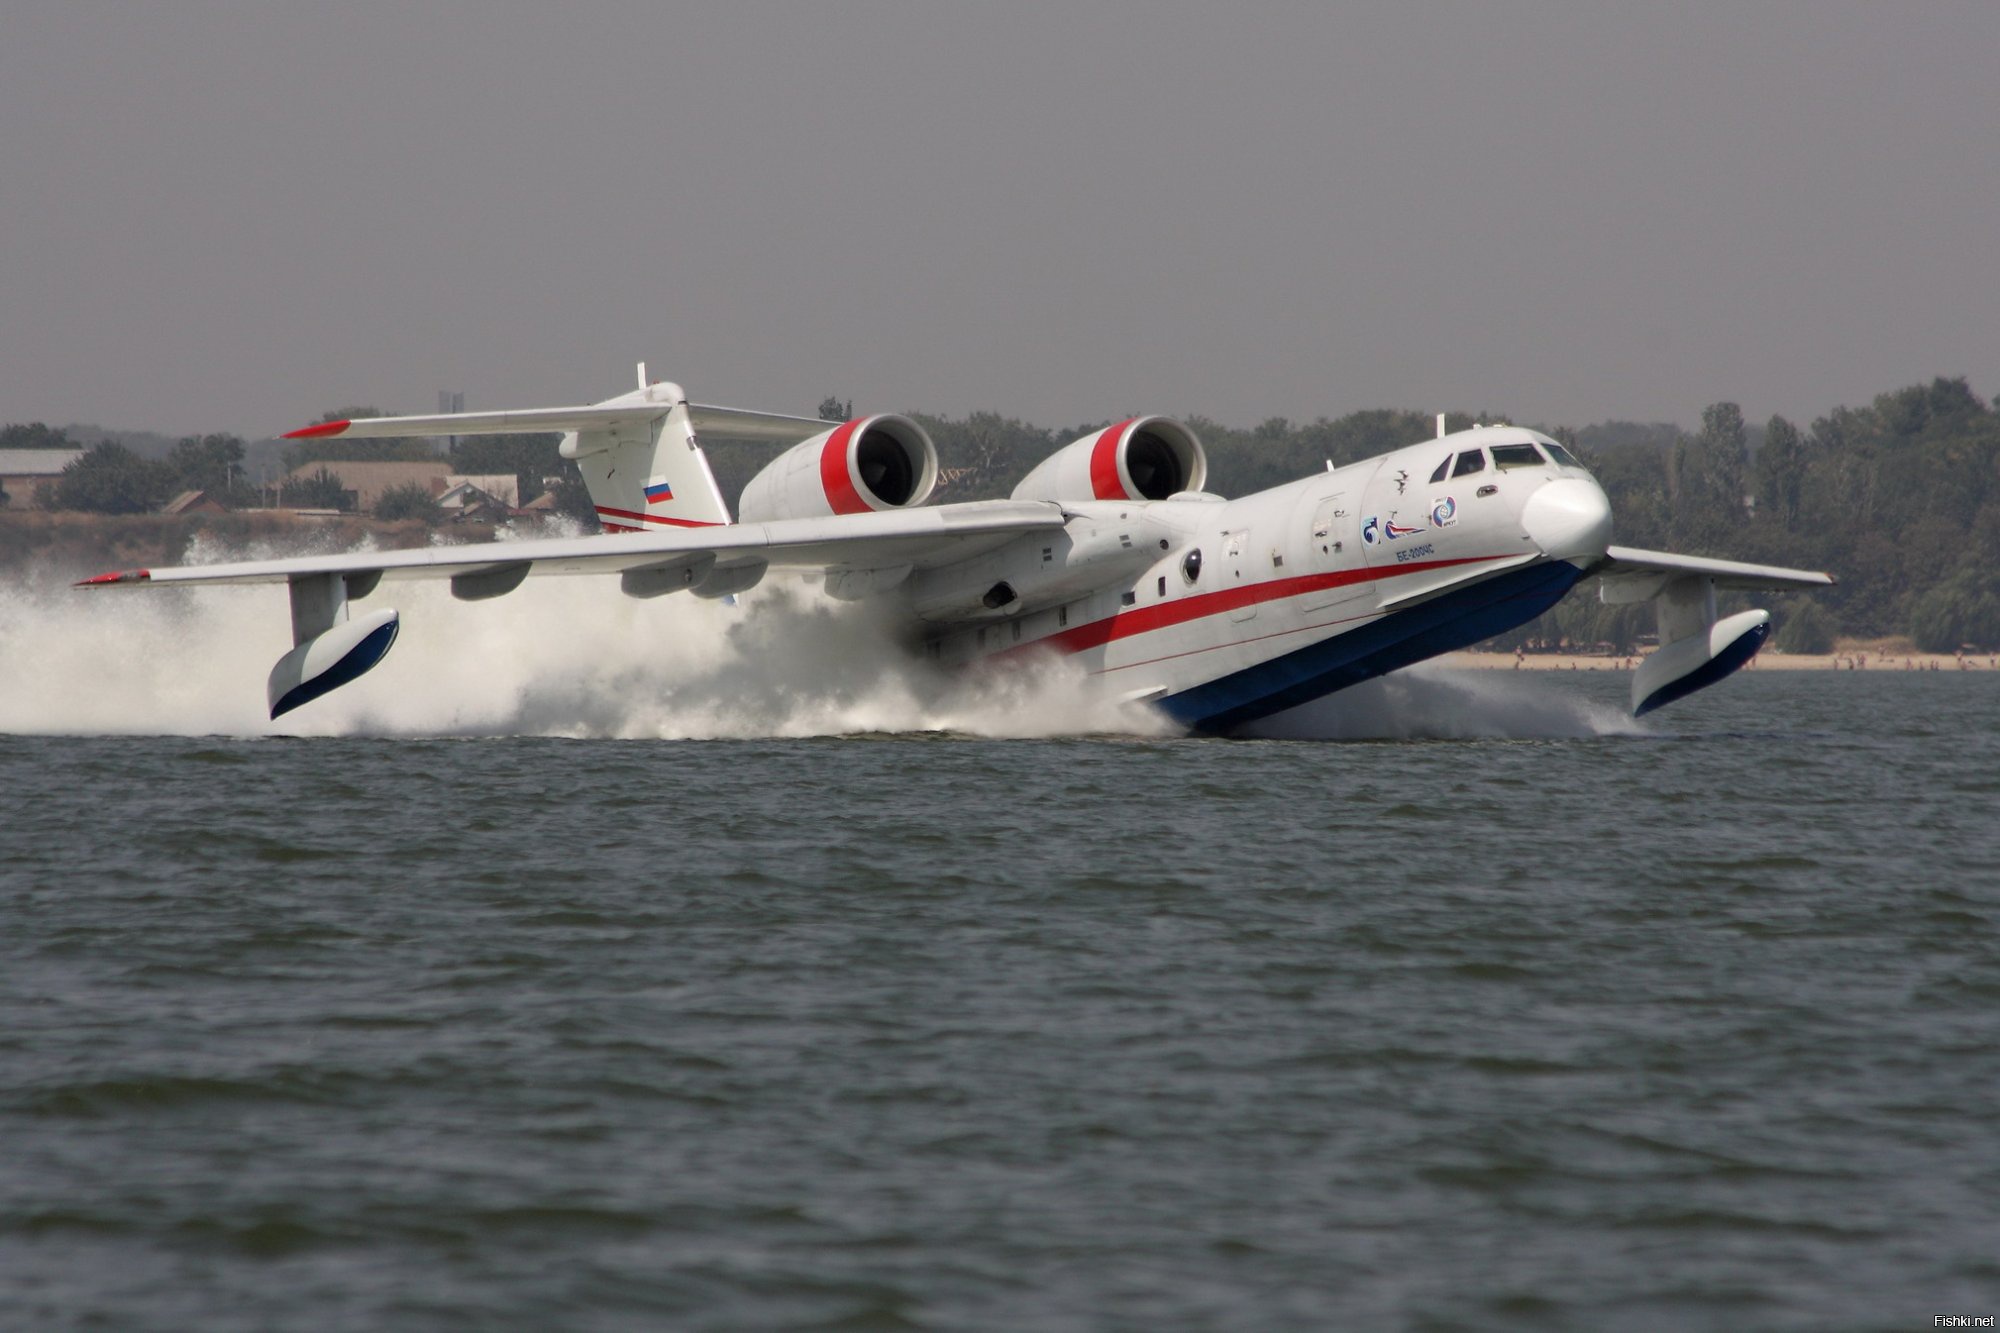 Думаю, при заборе воды самолётом БЕ-200 можно подобрать целую группу аквалангистов, и пройдут целиком))